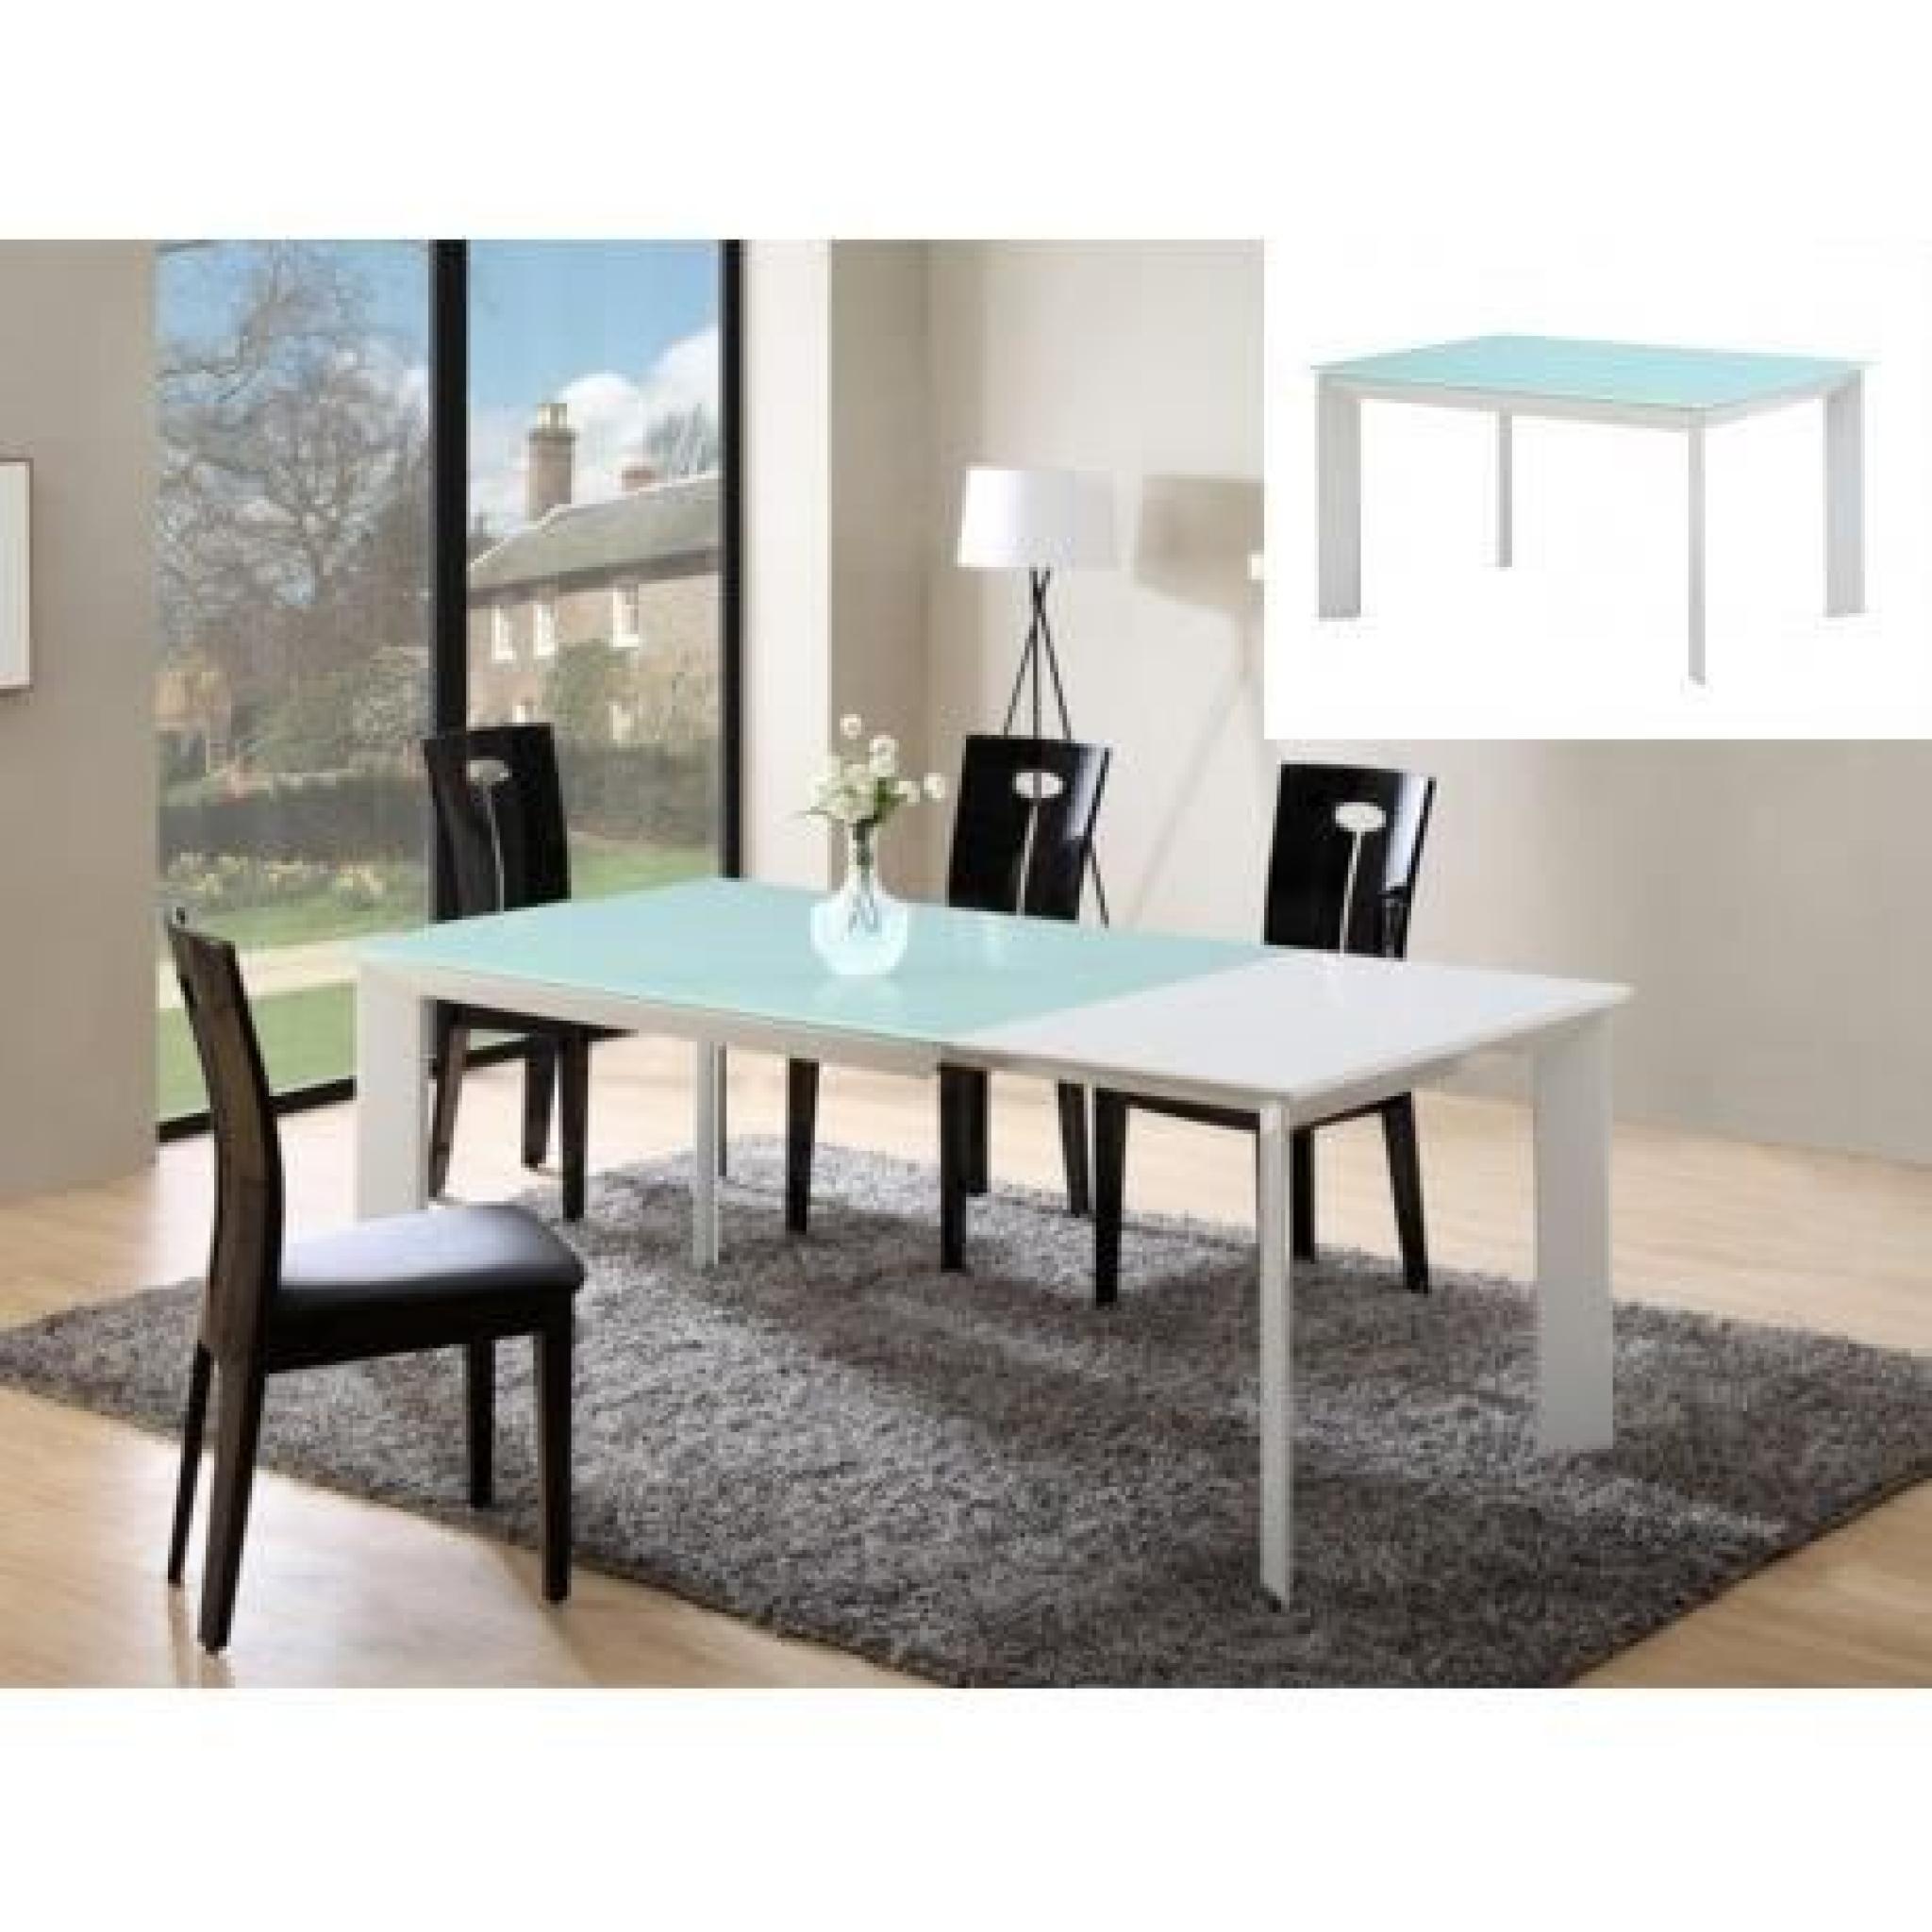 Table extensible ARIELLE - 6 à 8 couverts - MDF & verre trempé - Gris anthracite & blanc